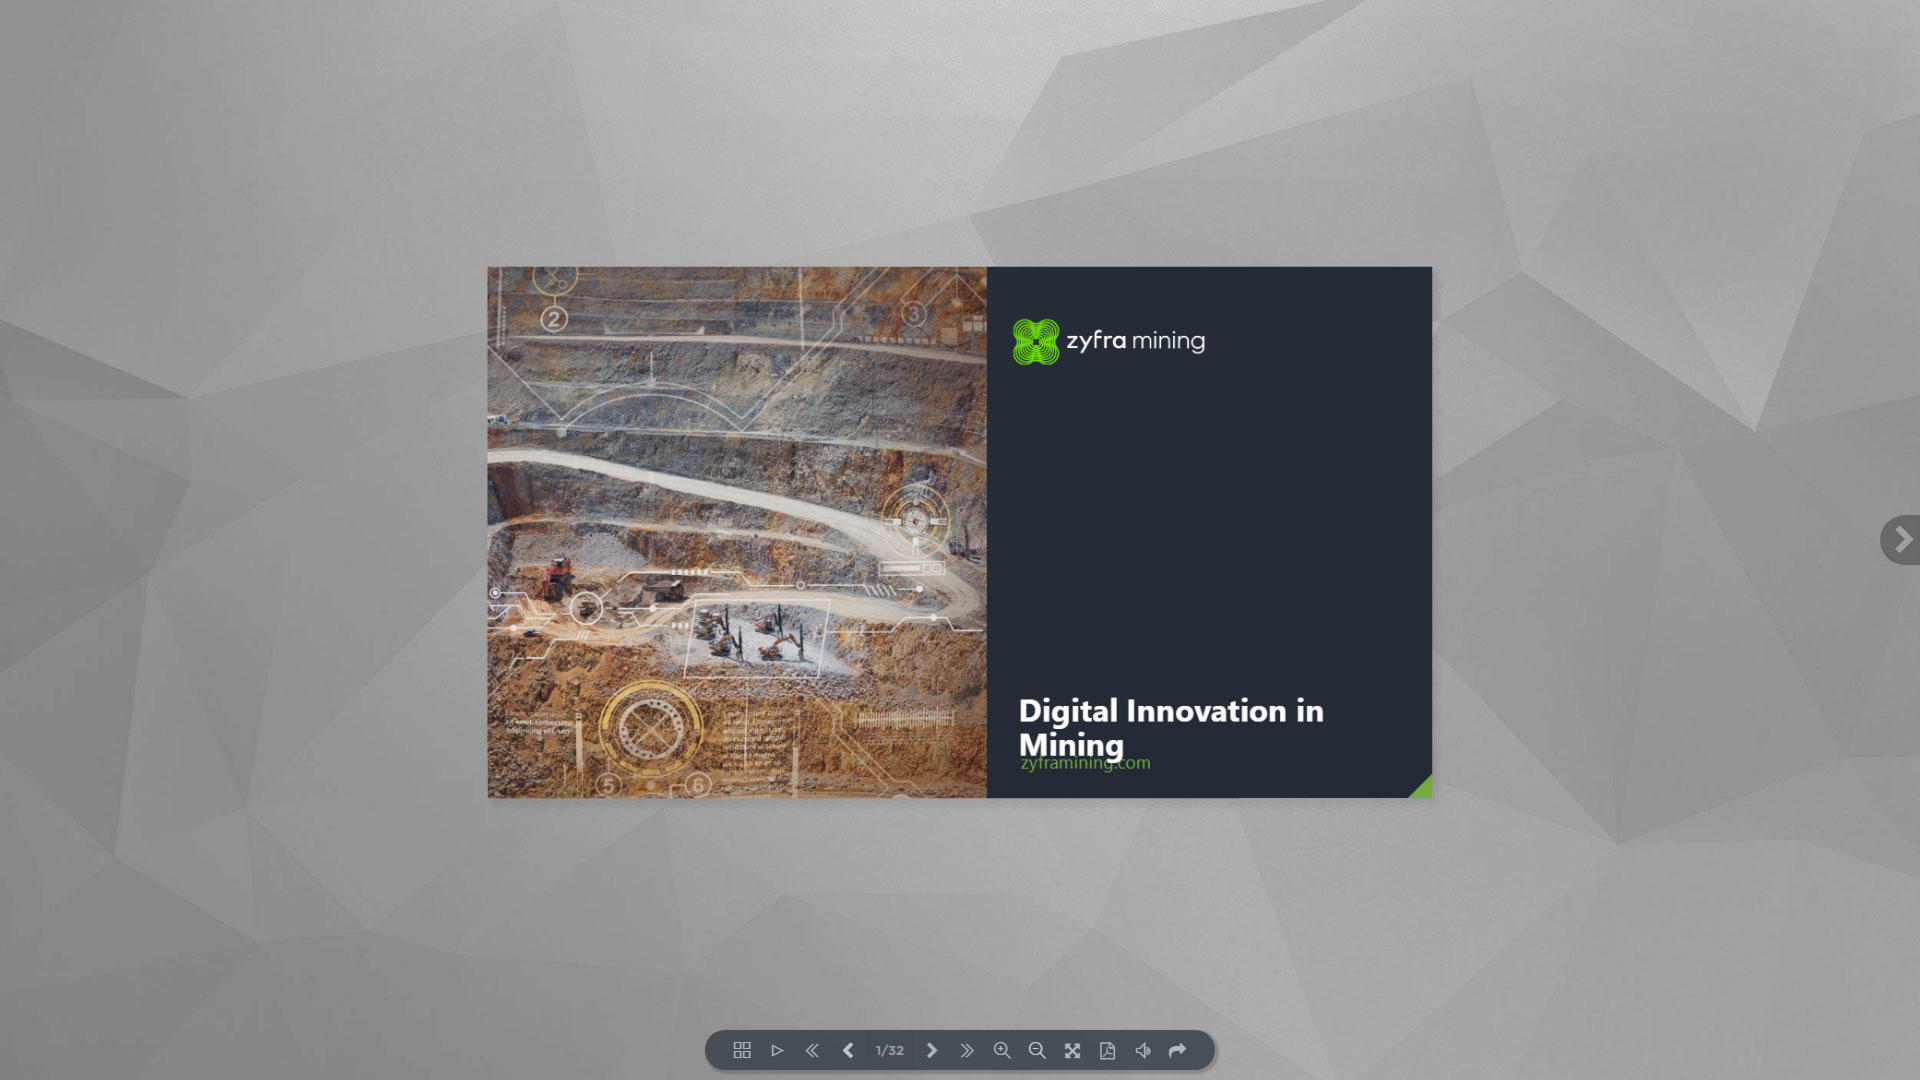 Zyfra Digital Mining Solutions